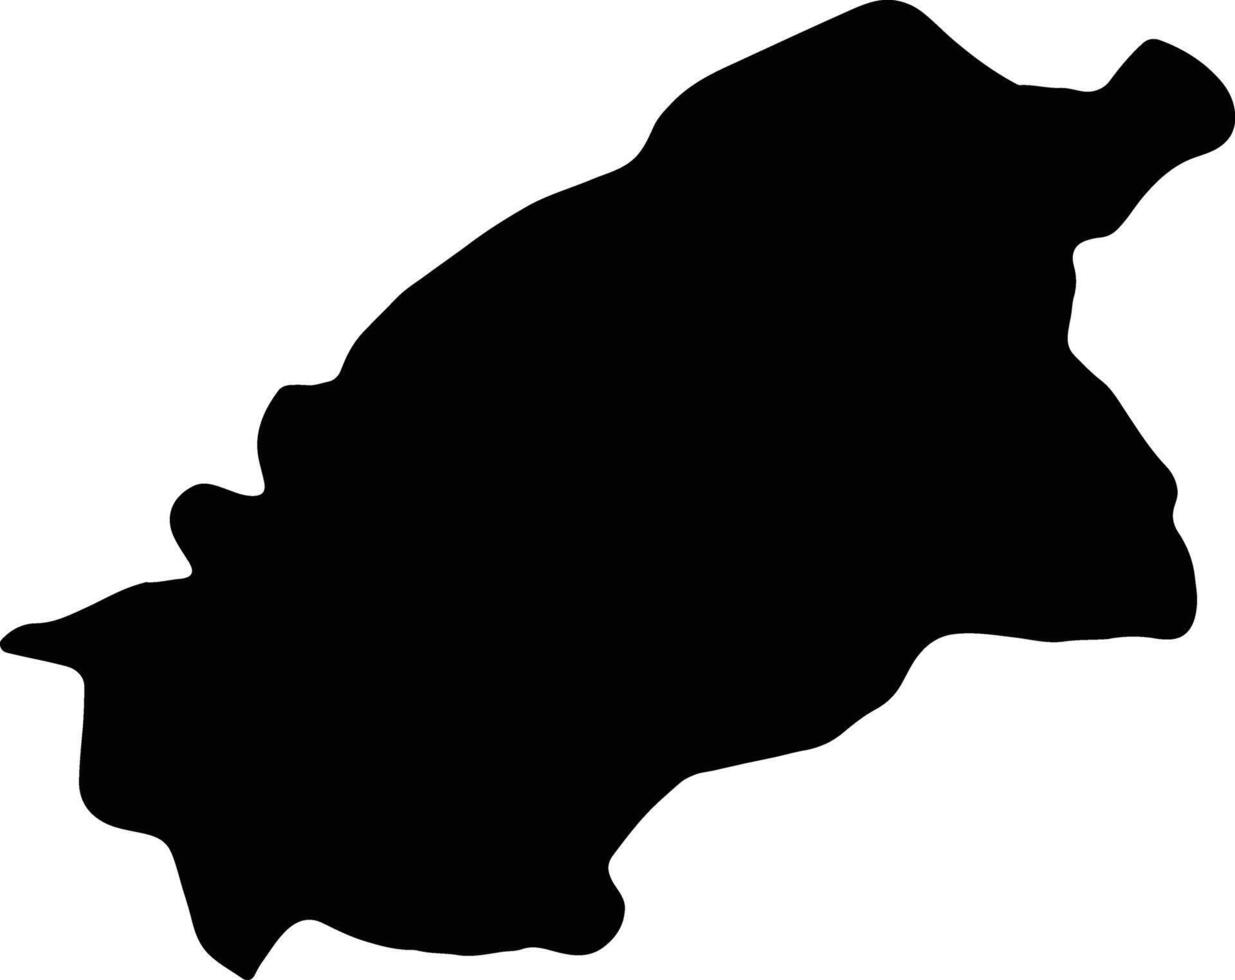 Al Quassim Saudi Arabia silhouette map vector